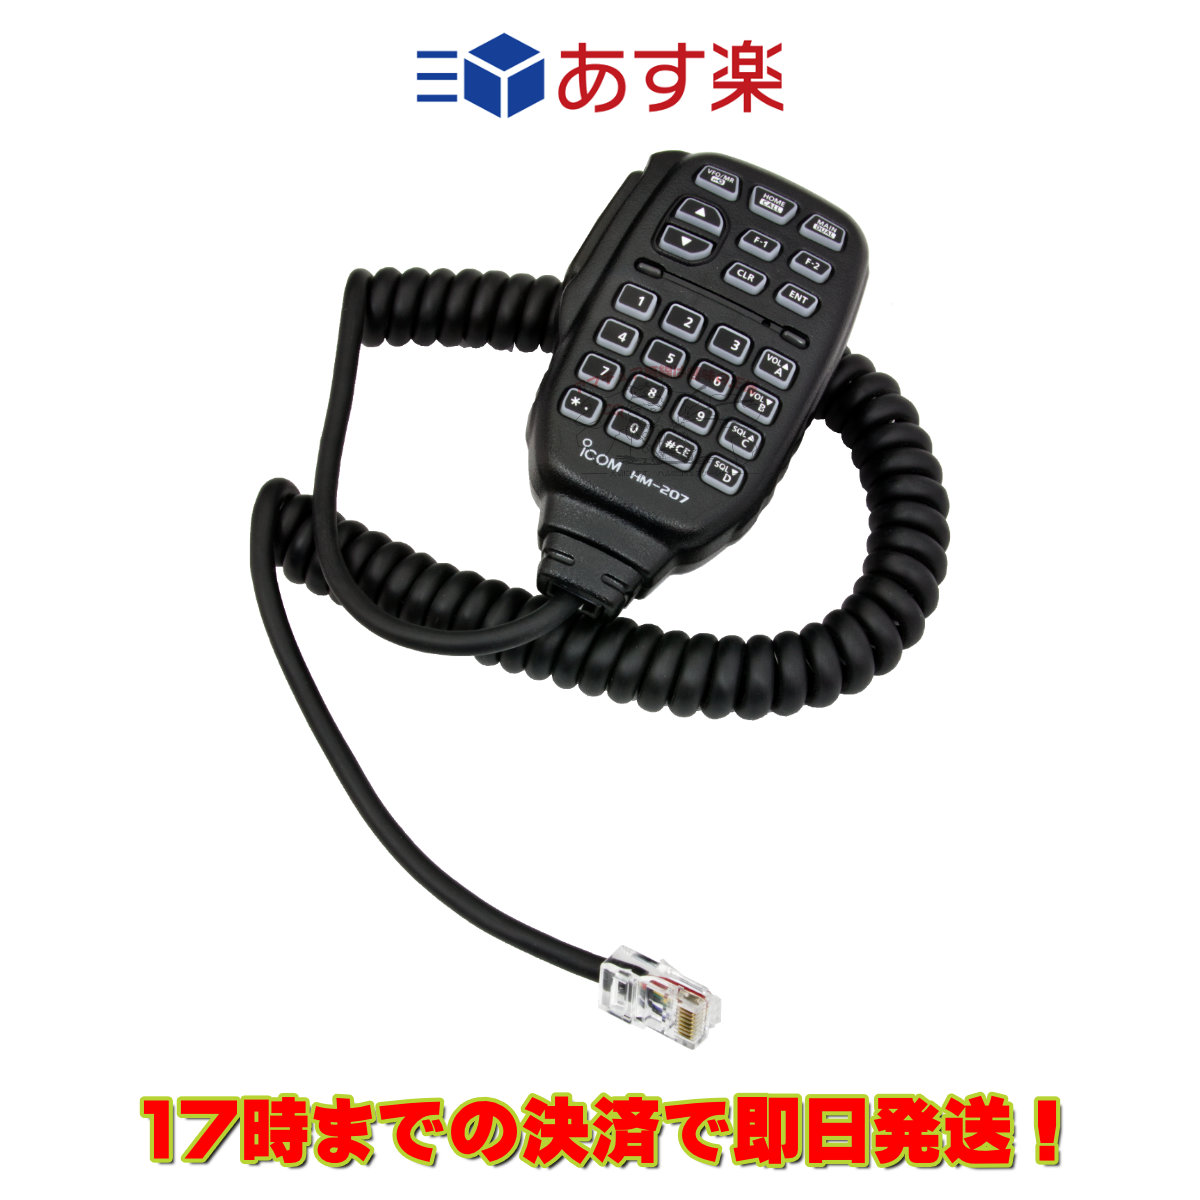 アマチュア無線ICOM ID-5100【20W機】取扱説明書あります。-